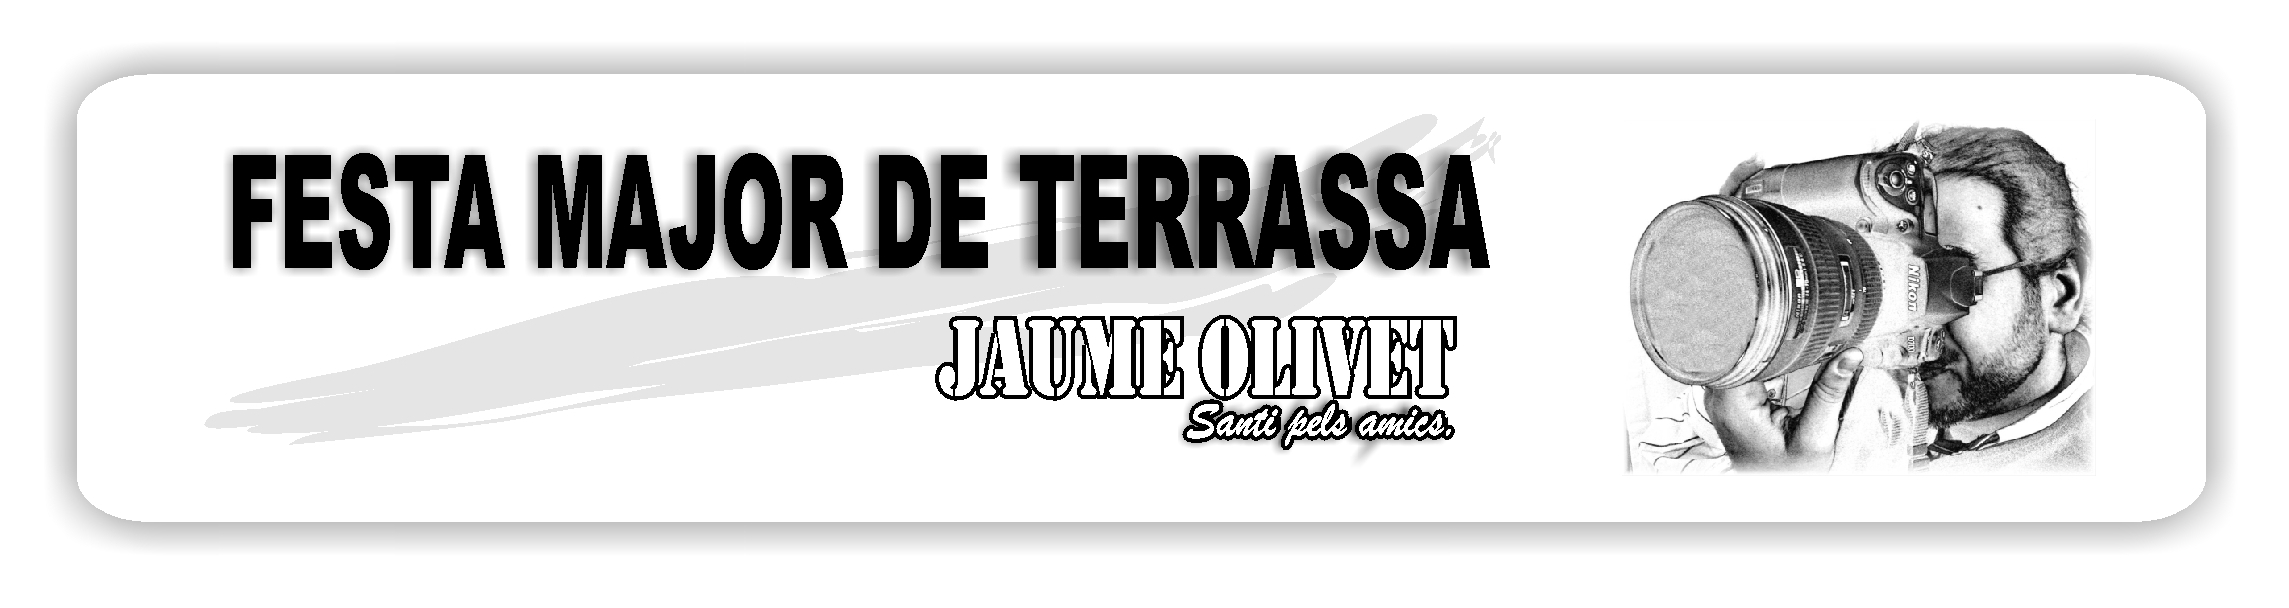  Jaume olivet